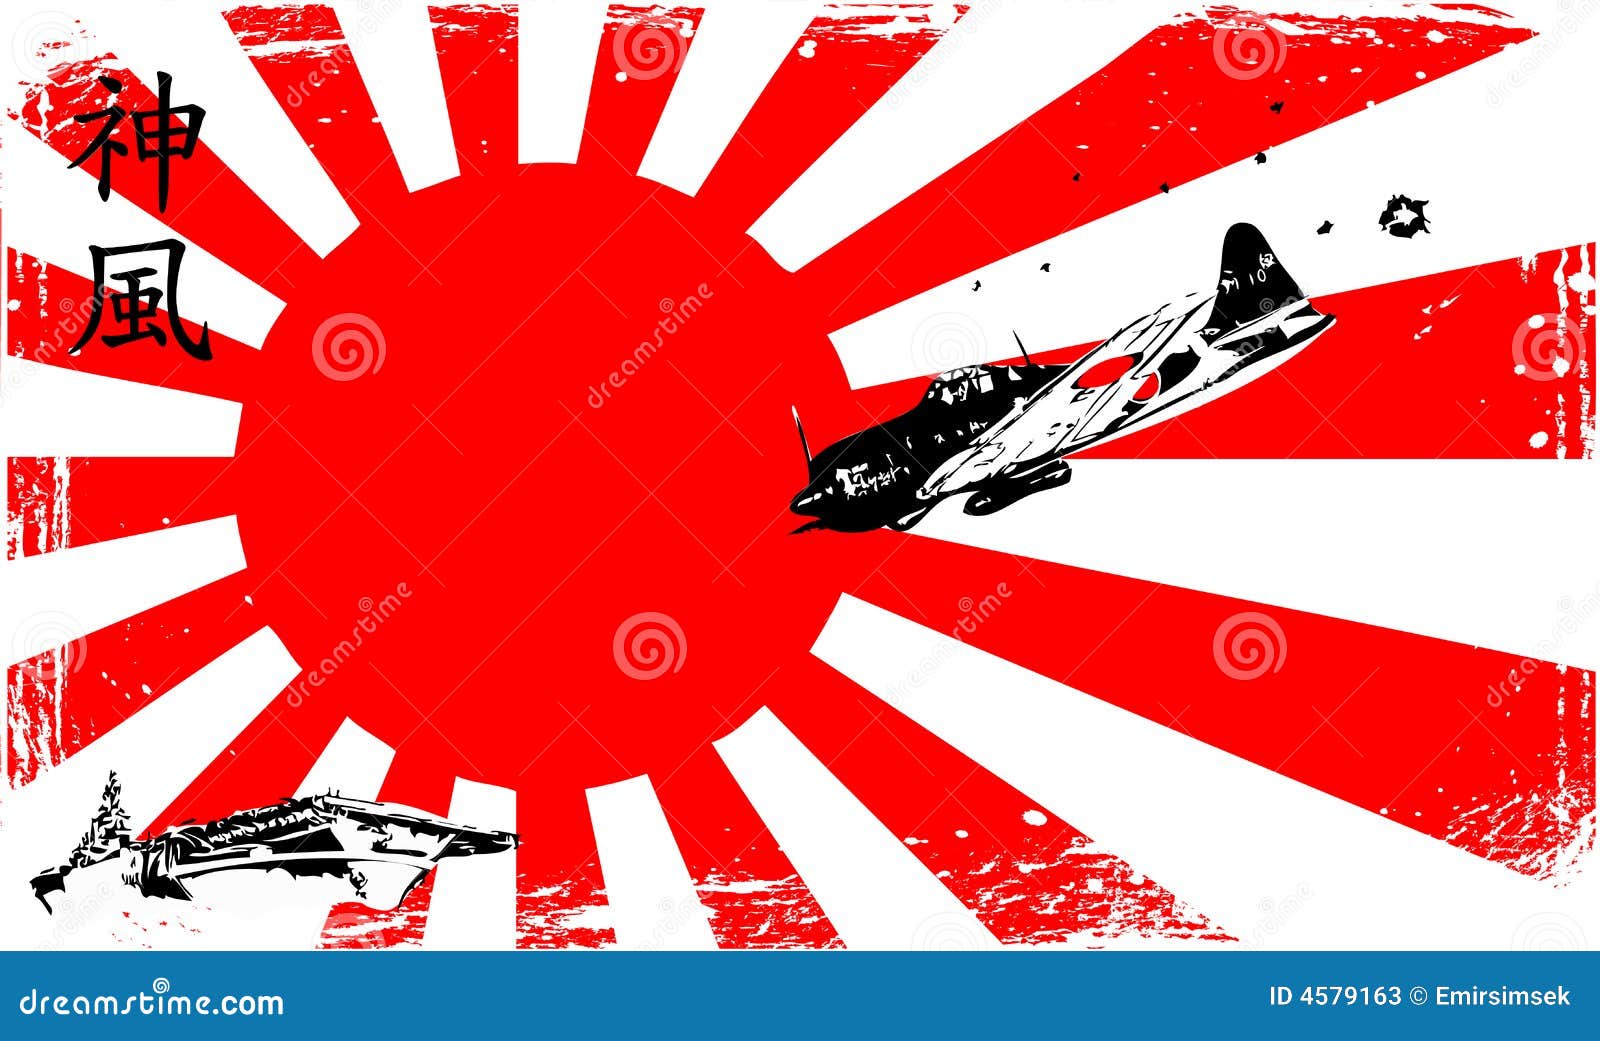 kamikaze-4579163.jpg